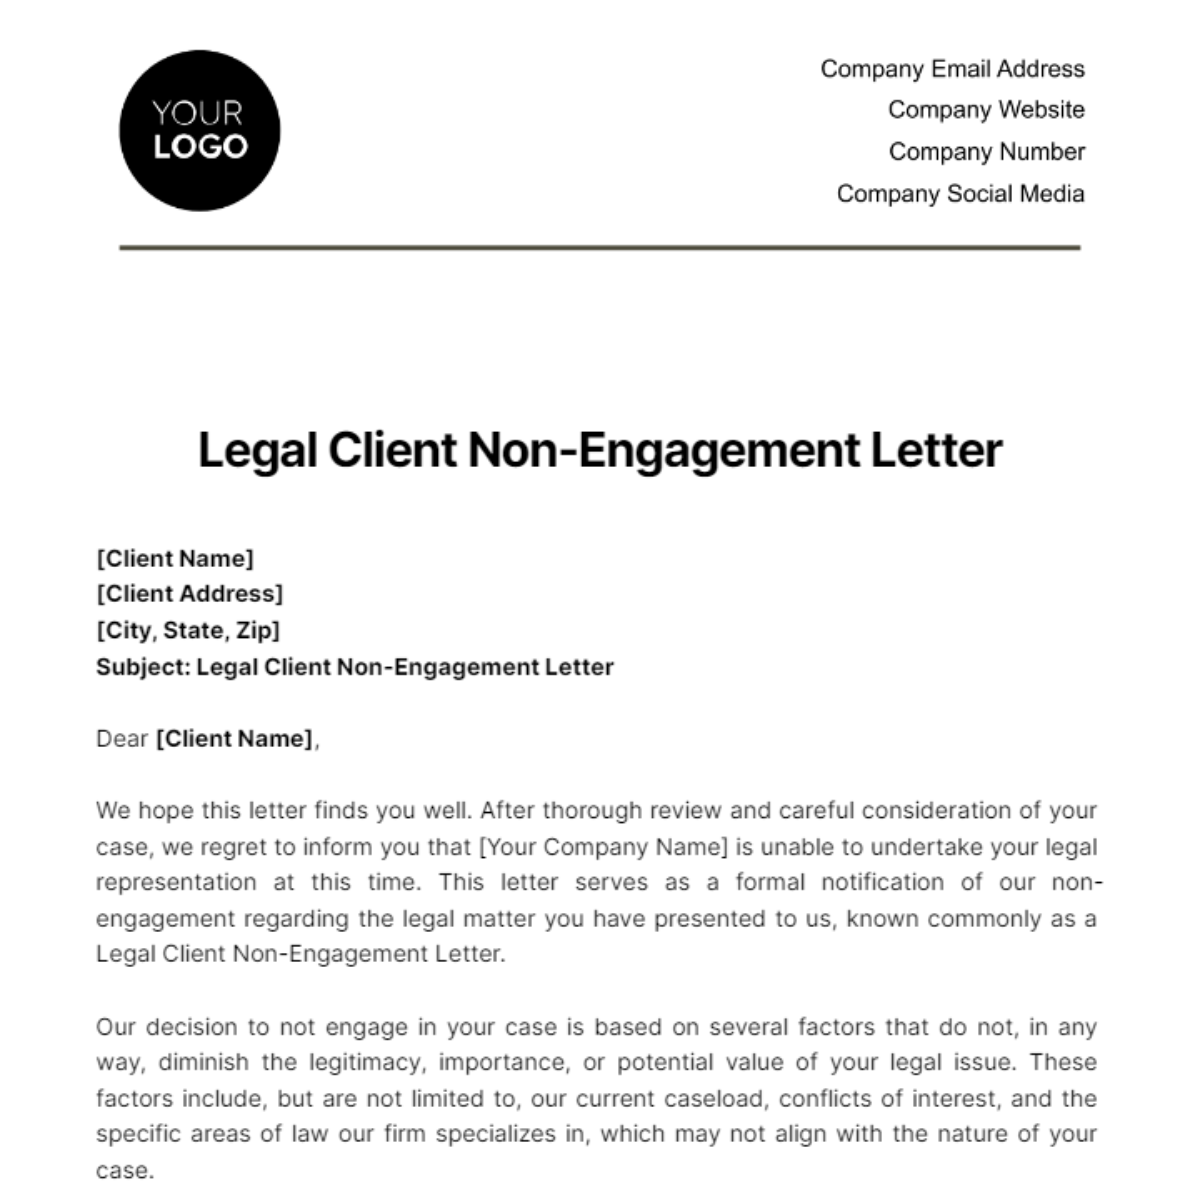 Legal Client Non-Engagement Letter Template